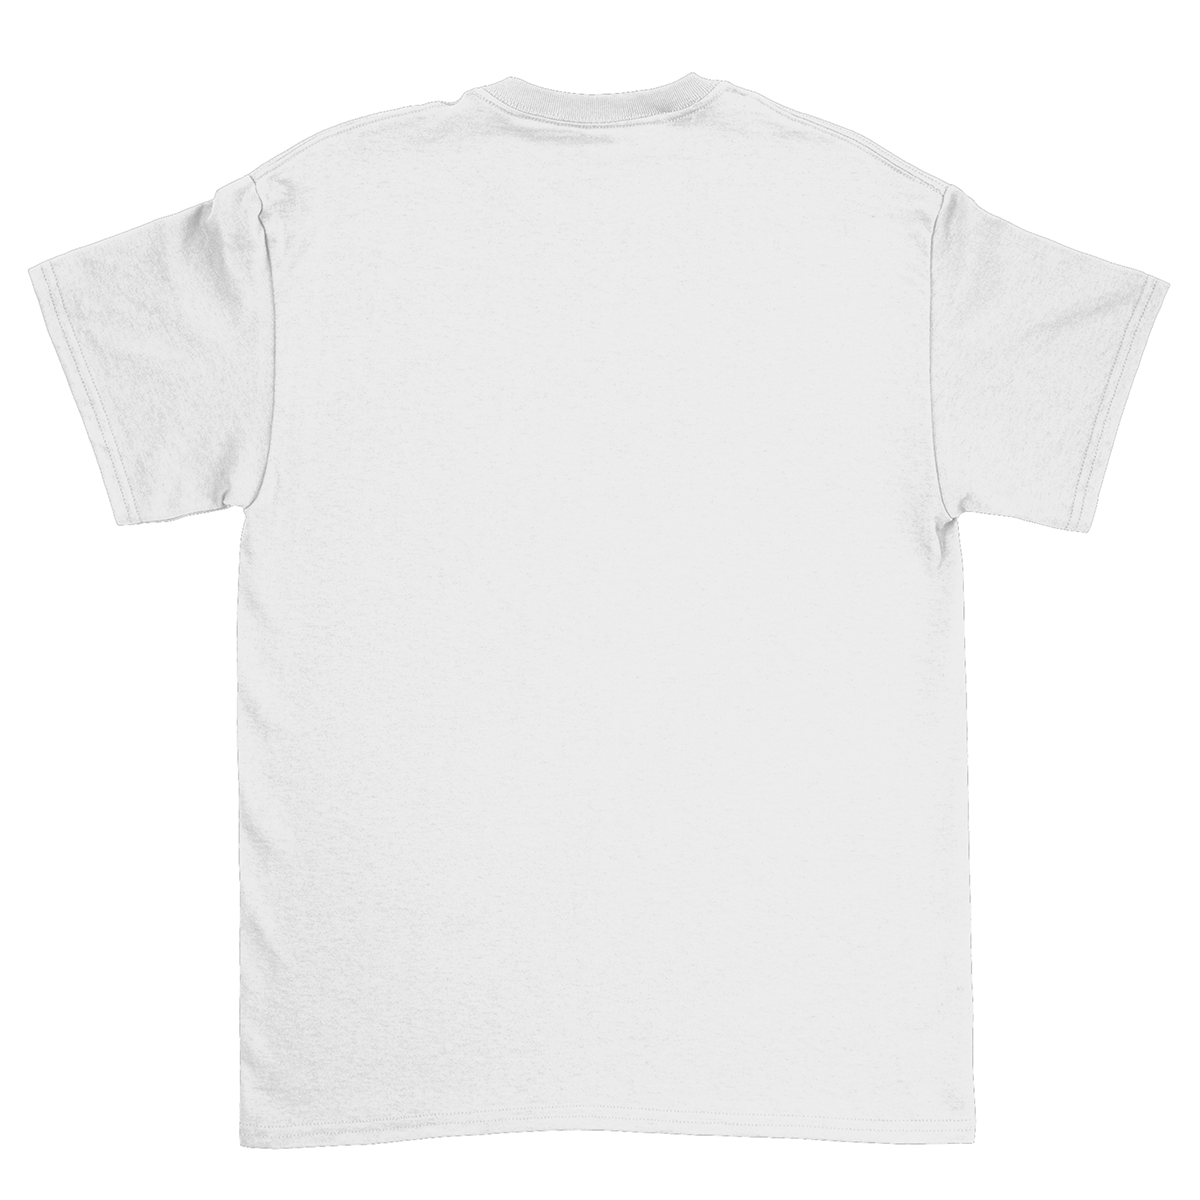 Emotionally Available Unisex T-Shirt